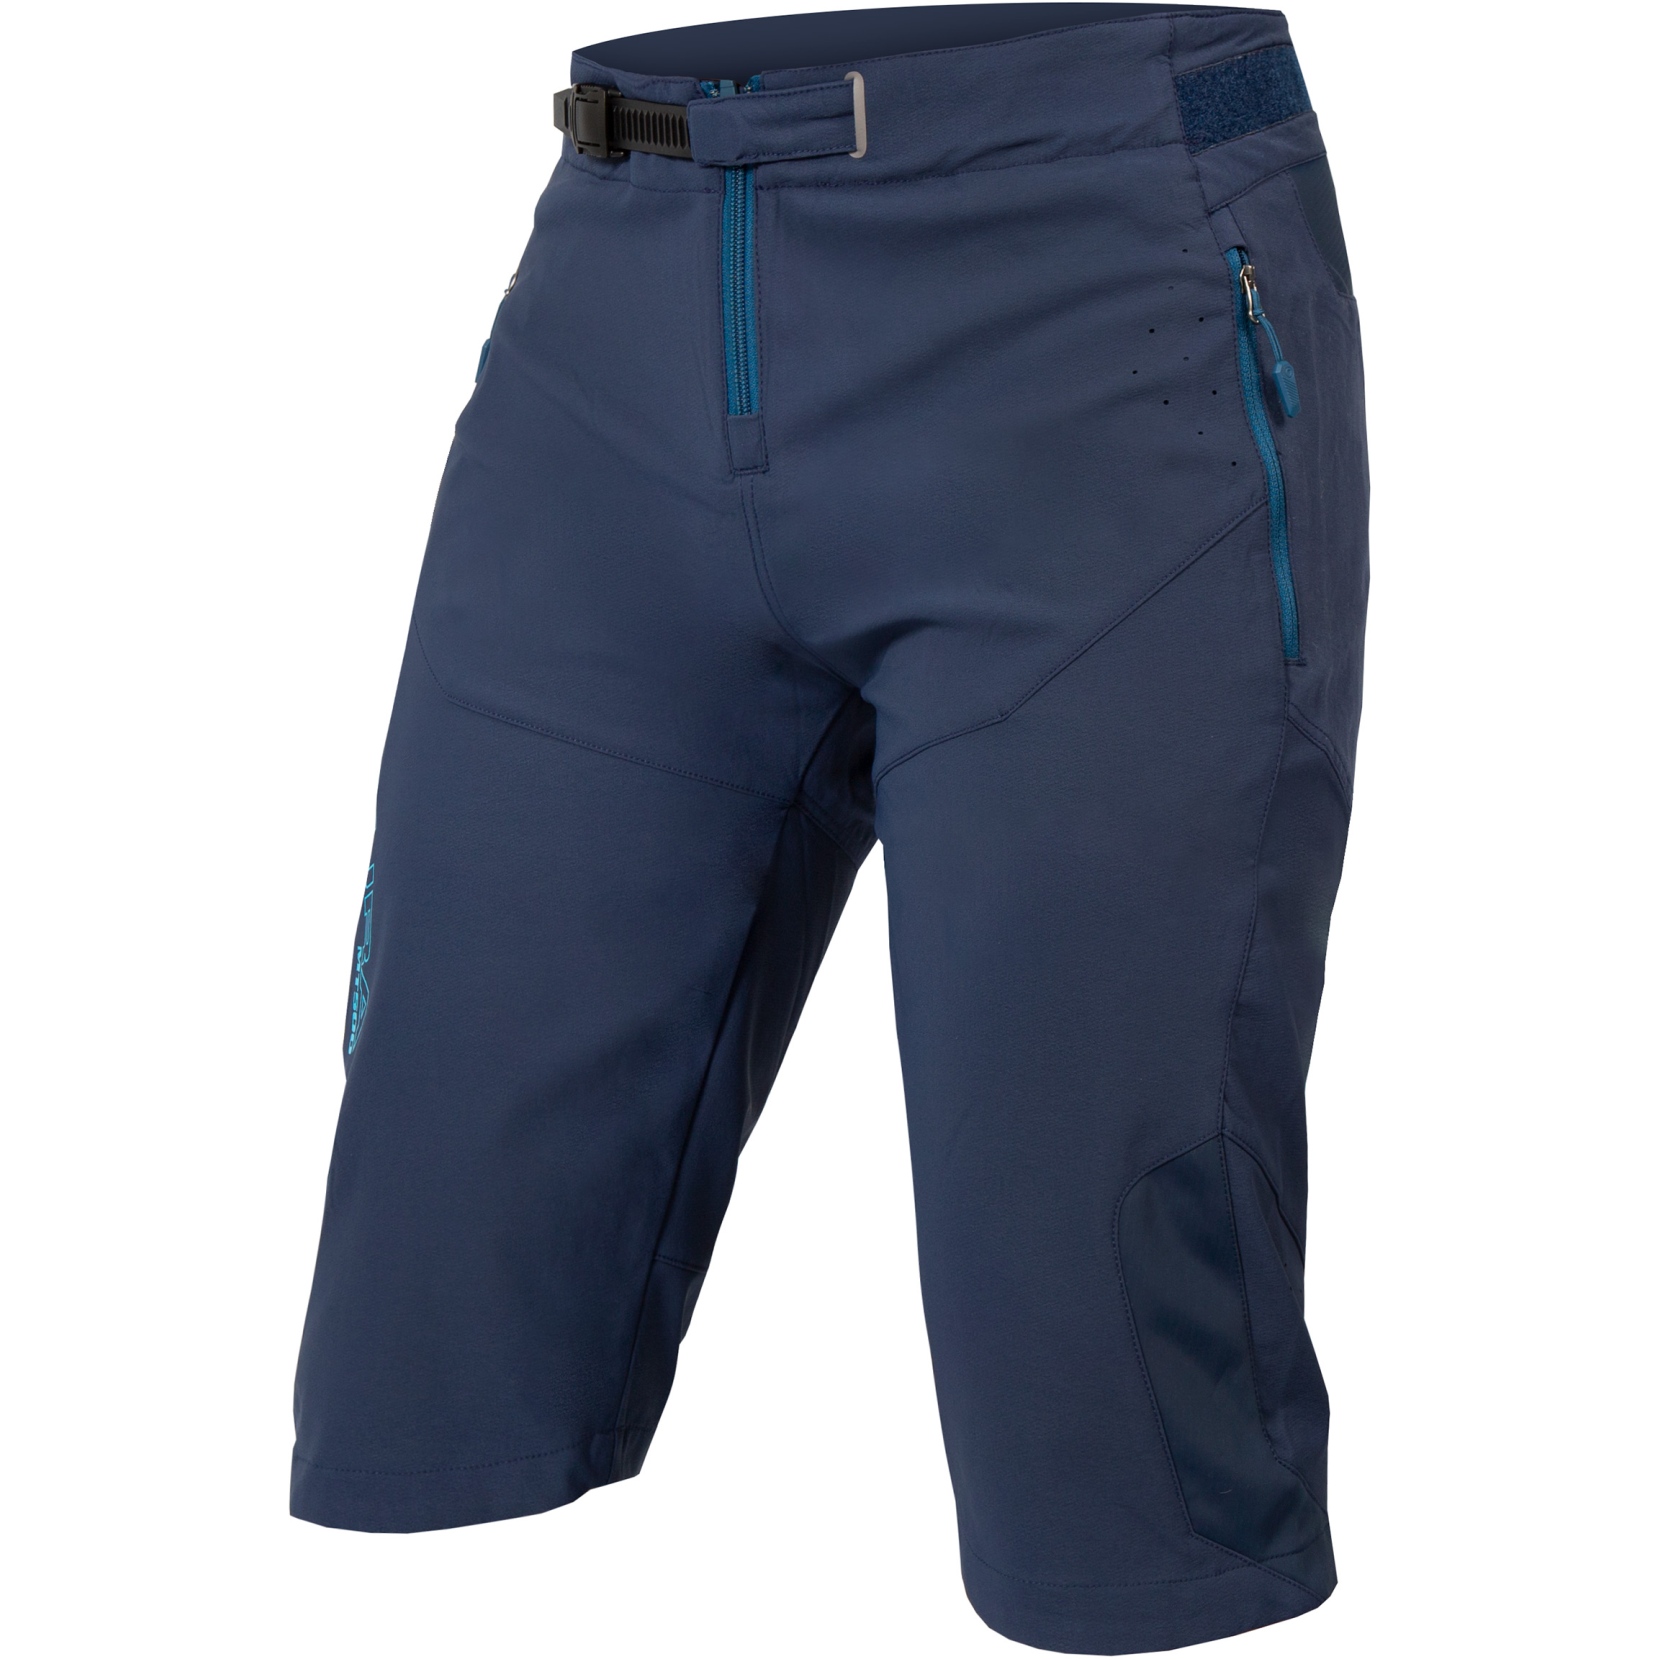 Productfoto van Endura MT500 Burner Shorts - ink blue